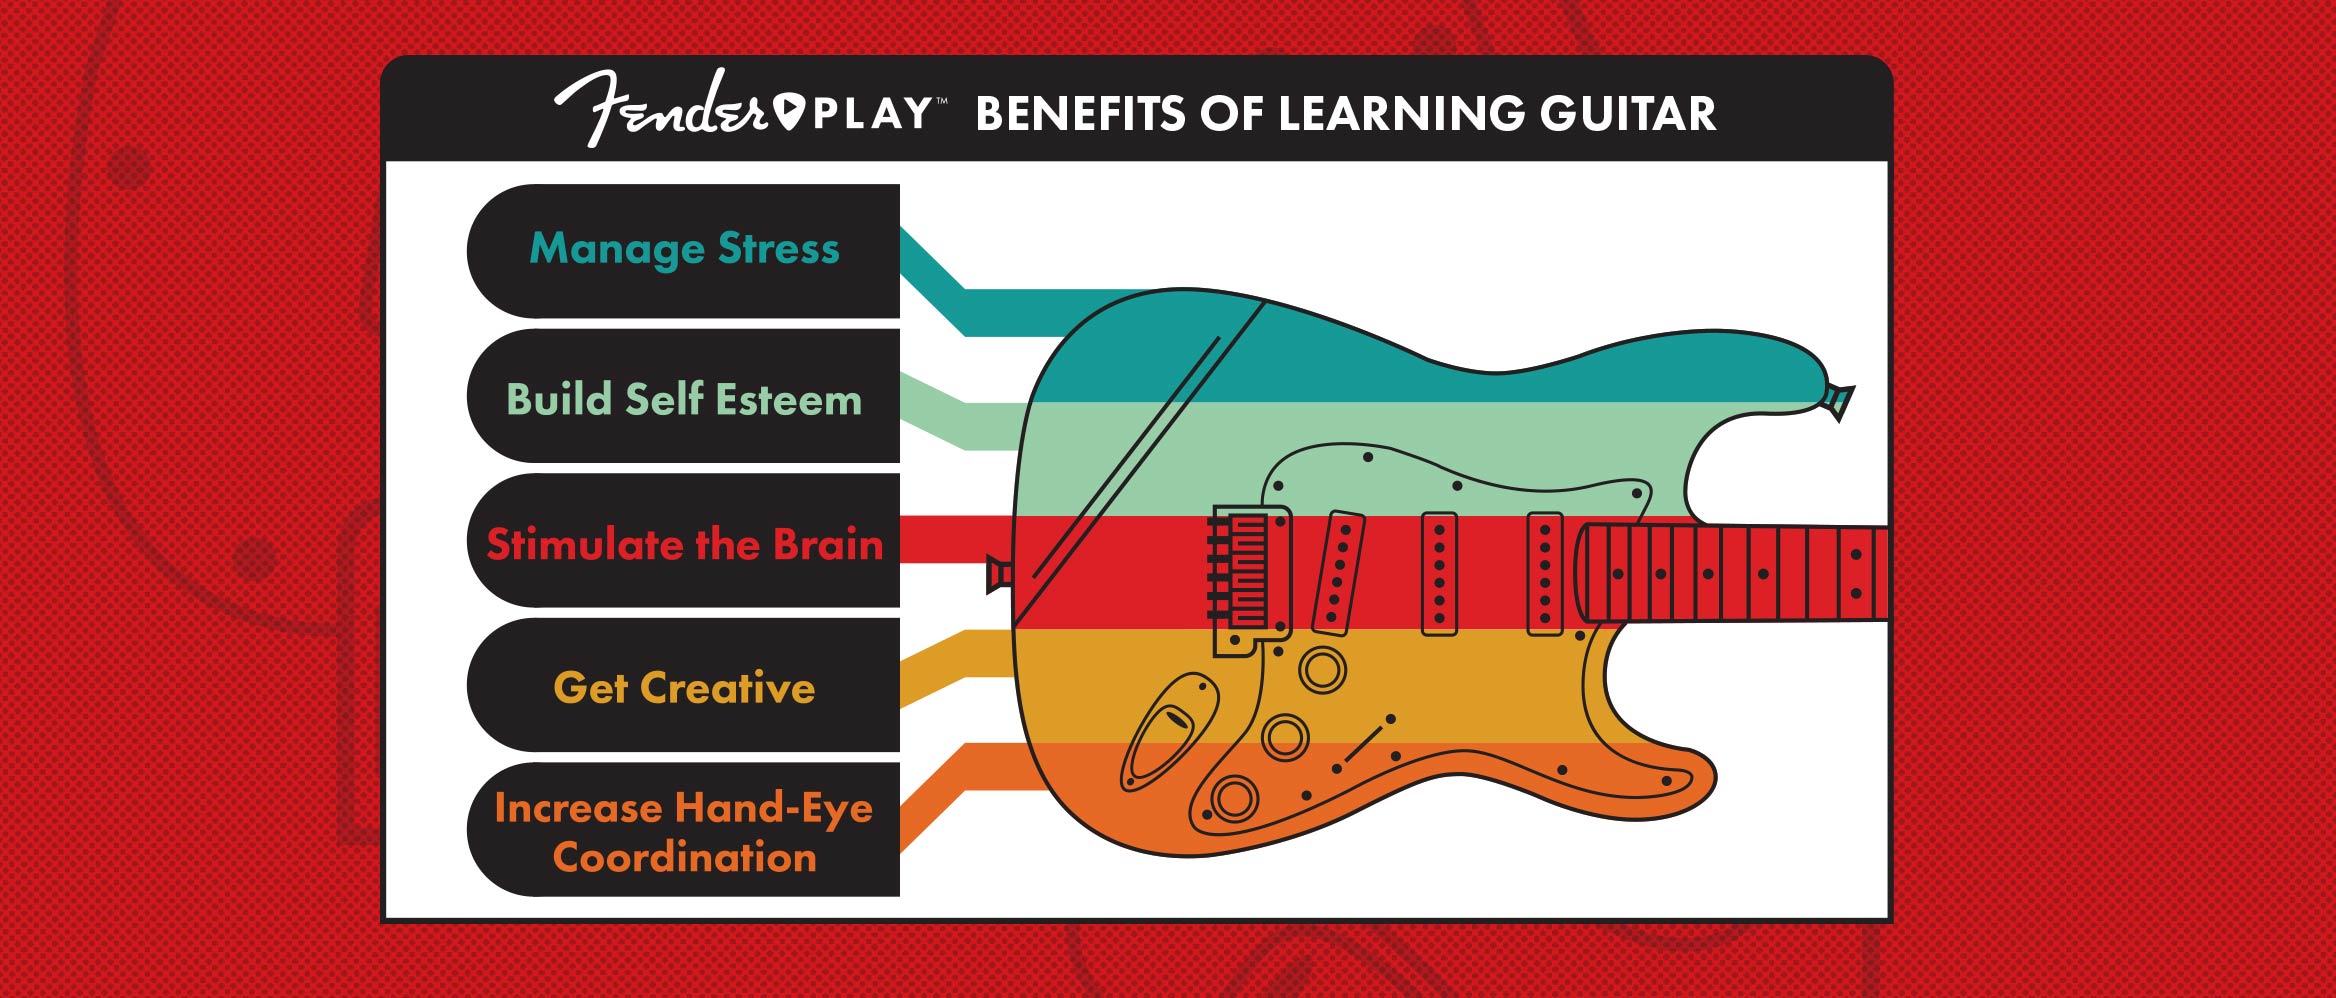 Can Guitar Hero make me better at guitar? 